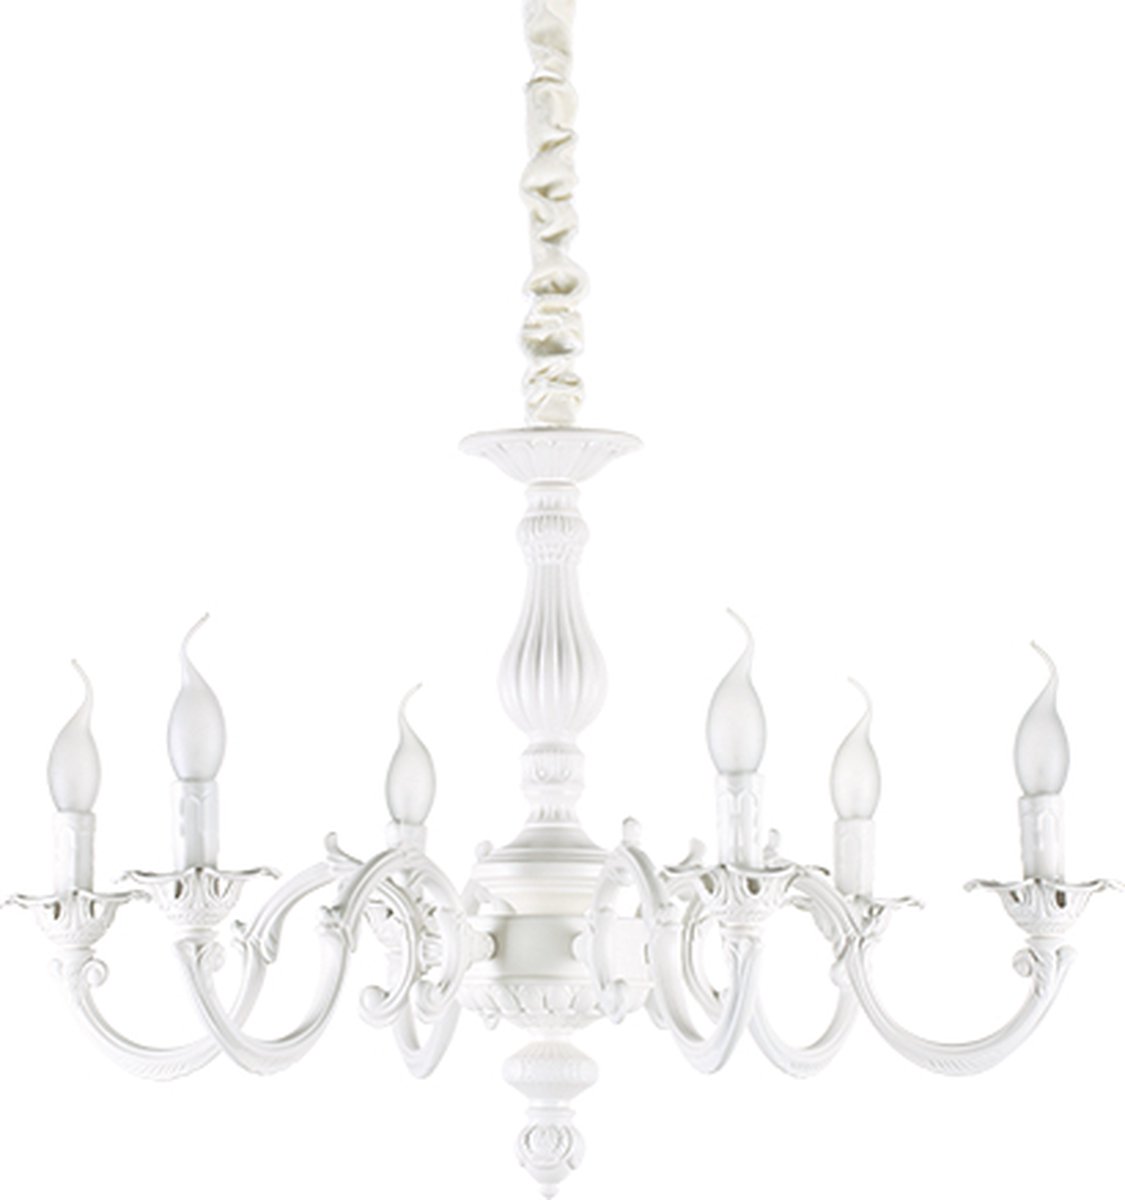 Ideal Lux - Justine - Hanglamp - Metaal - E14 - Wit - Voor binnen - Lampen - Woonkamer - Eetkamer - Keuken